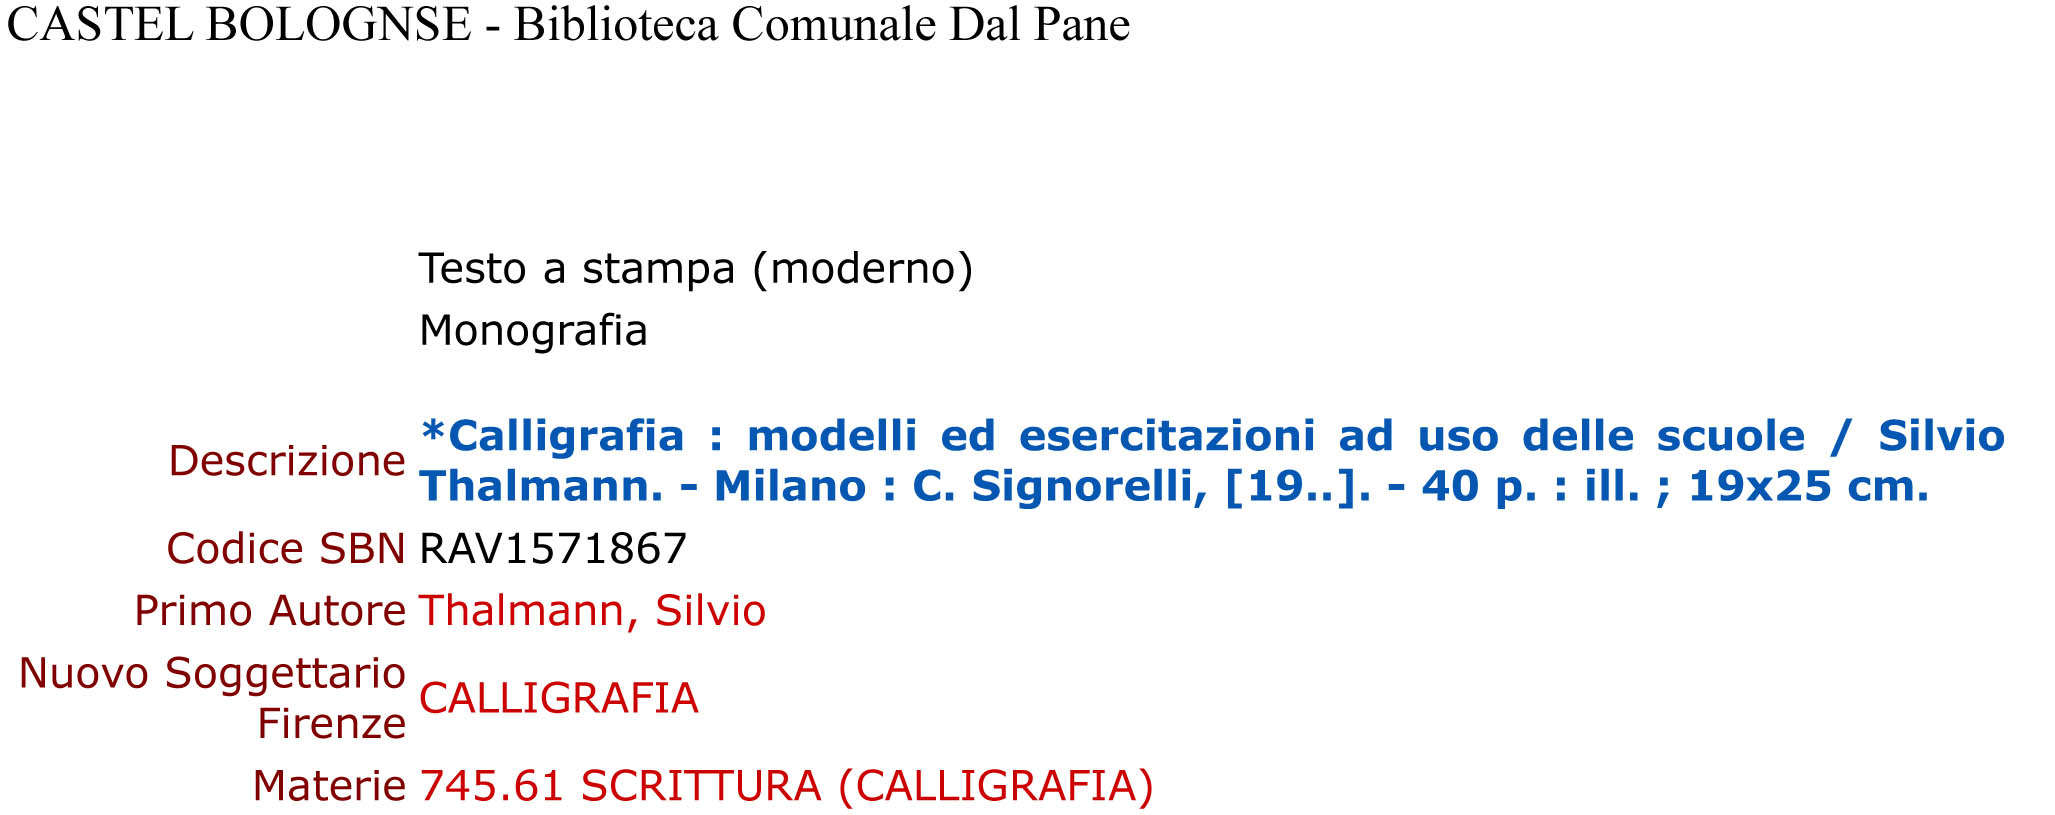 THALMANN Silvio - Calligrafia. modelli ed esercitazioni - Castel Bolognese.jpg